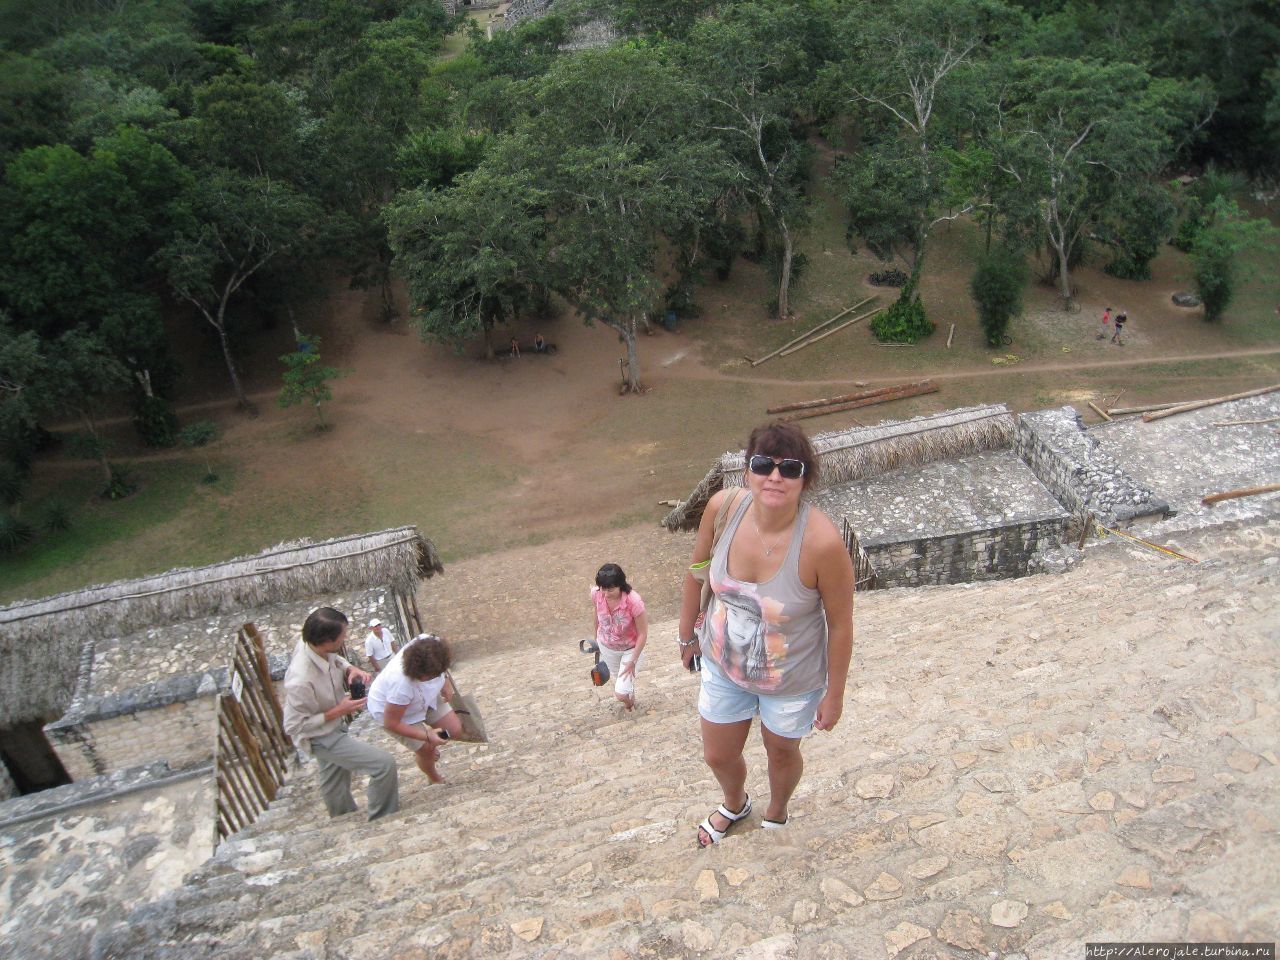 Мне бы в Небо (пирамиды Майа) Эк-Балам, Мексика